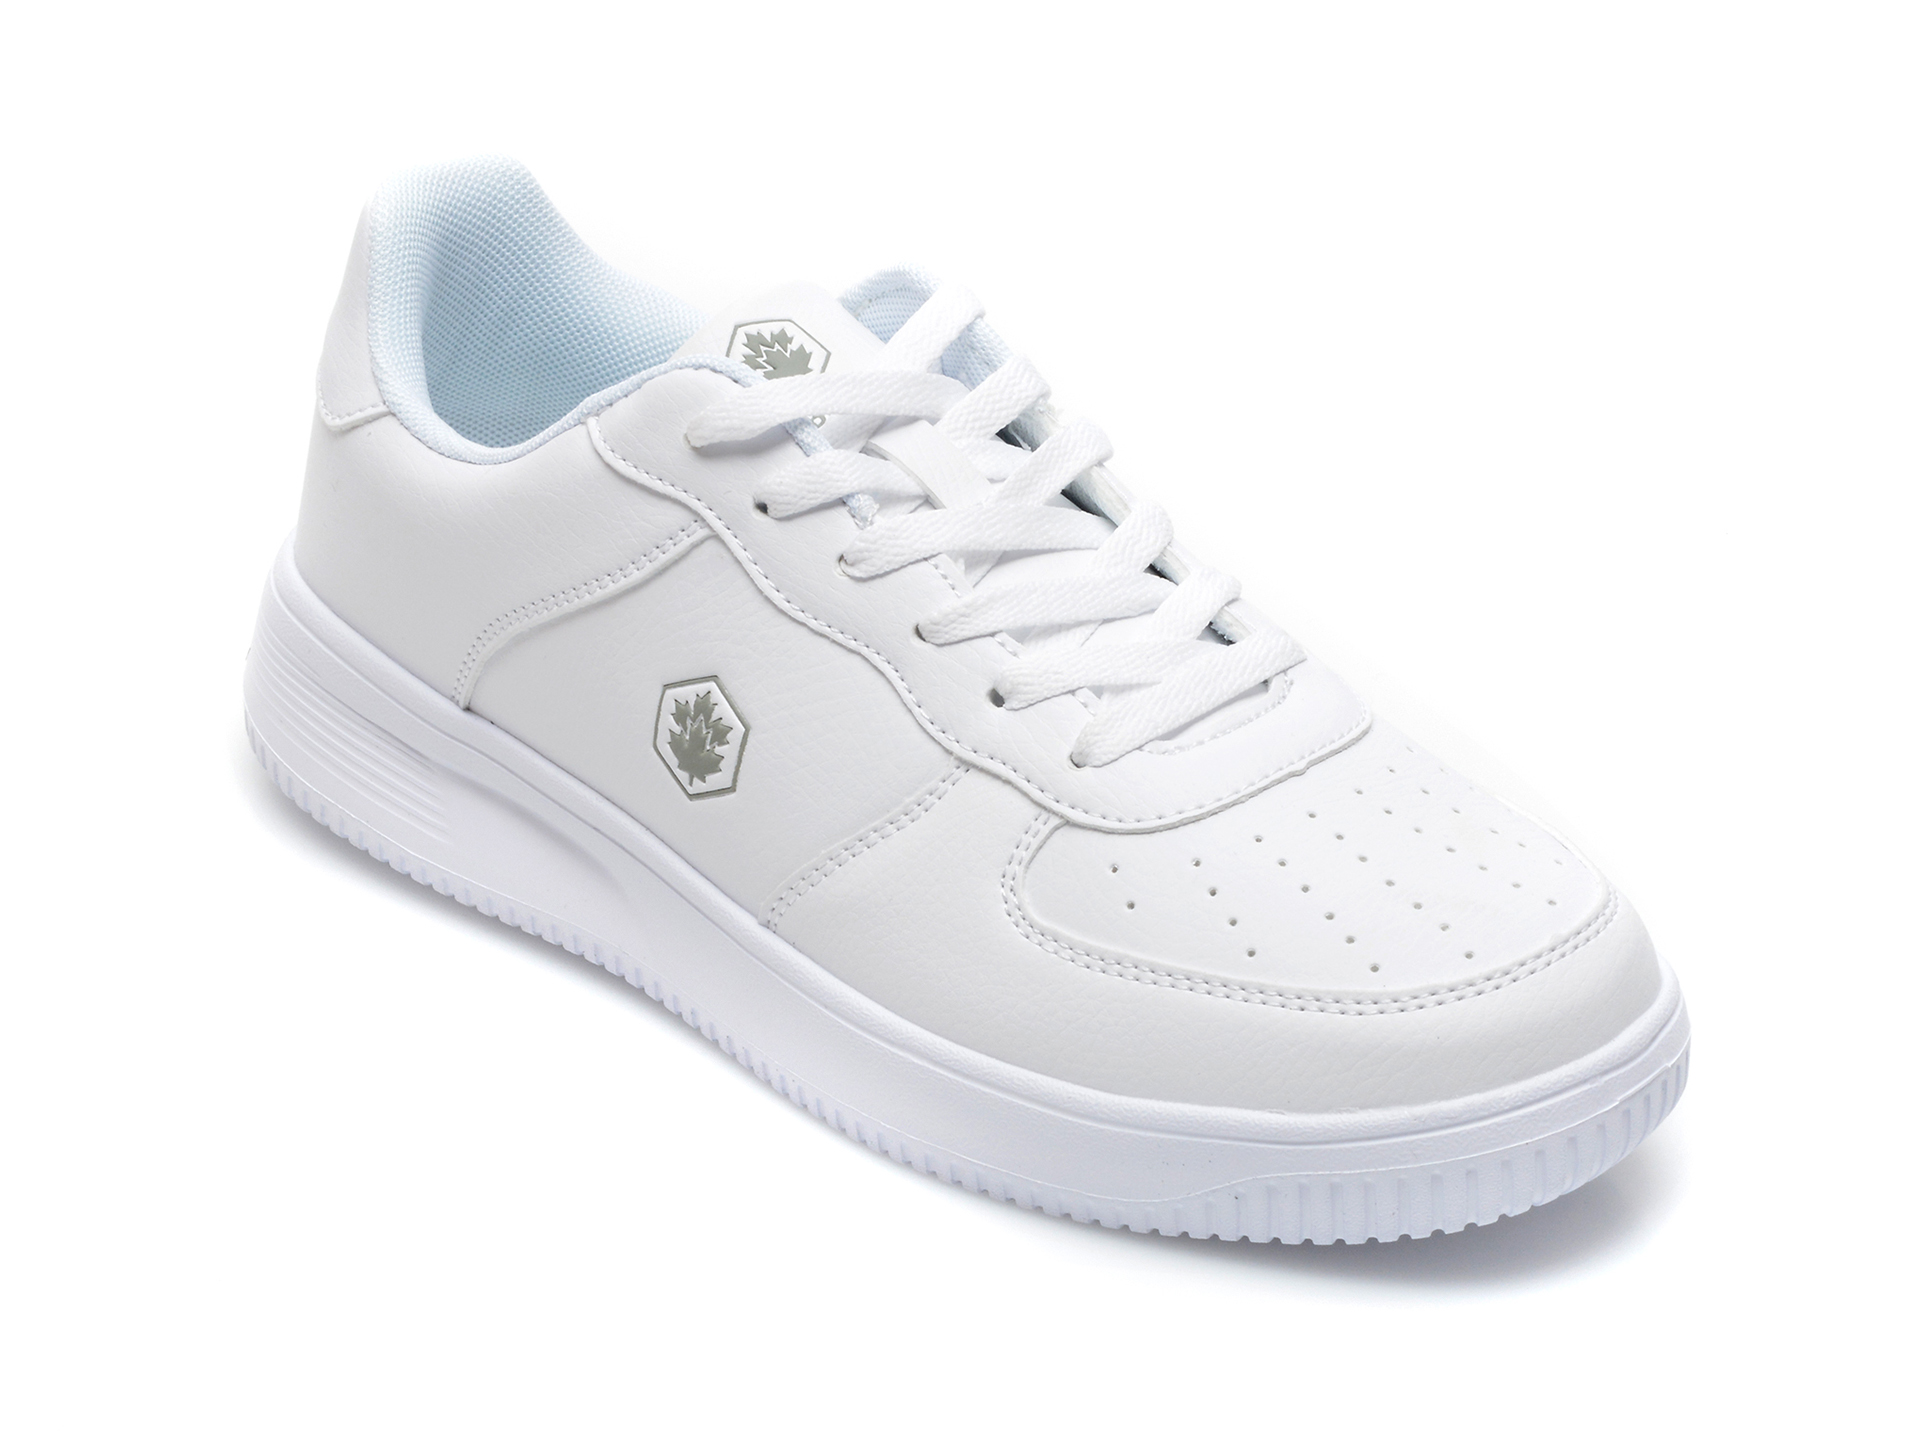 Pantofi sport LUMBERJACK albi, 7041001, din oiele ecologica